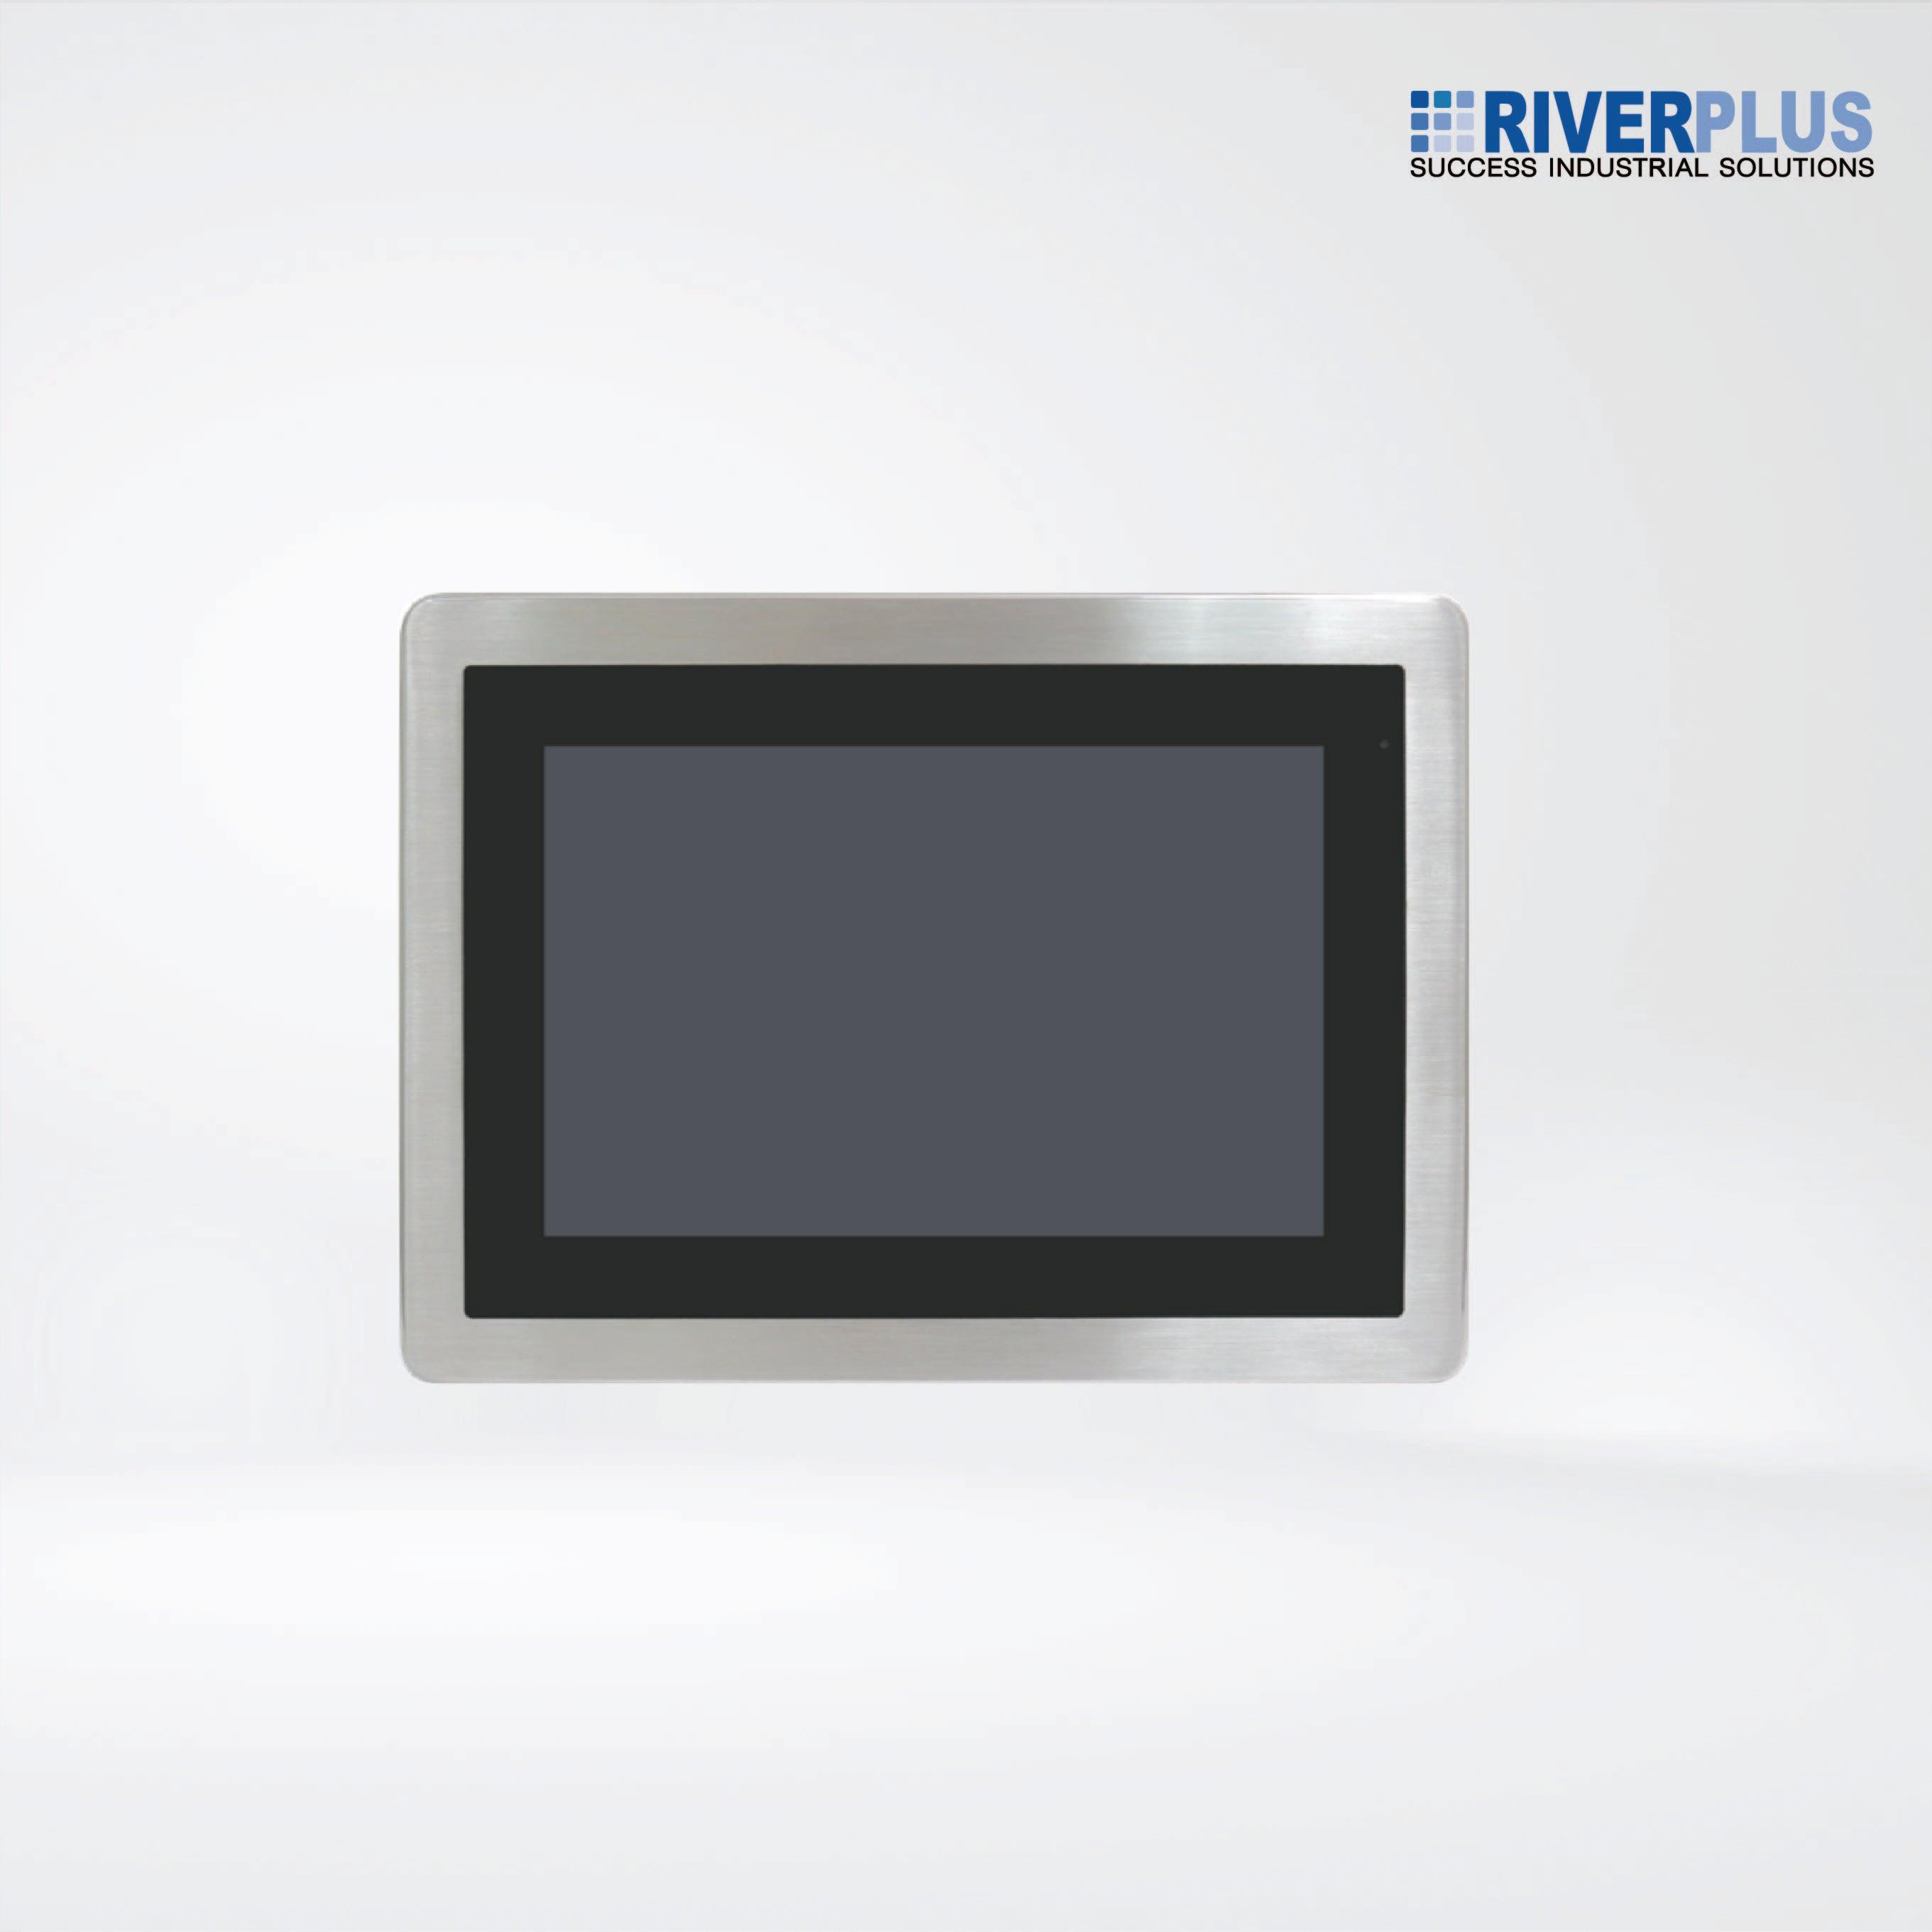 ViTAM-110GH 10.1″ New Gen. IP66/IP69K Stainless Steel Display - Riverplus